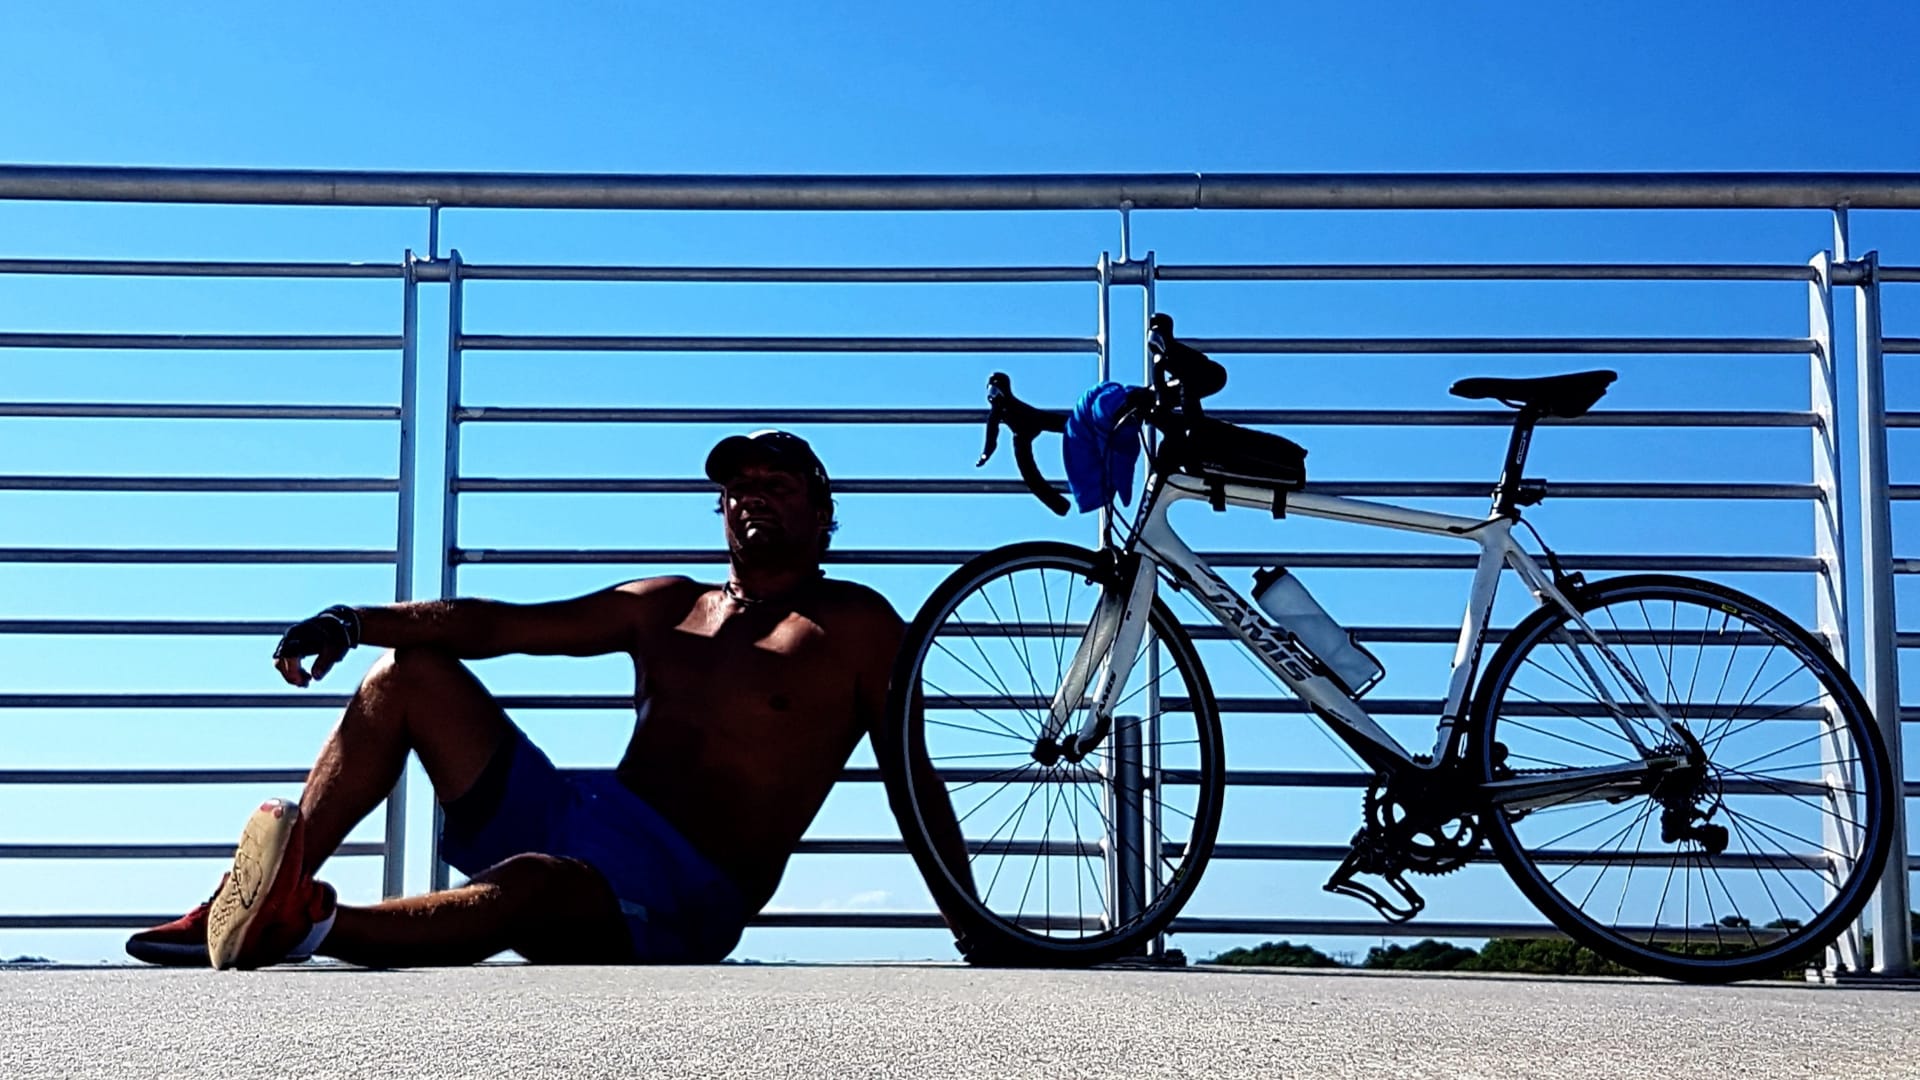 Volné chvíle na kole pod žhavým floridským sluncem. V létě dosahují teploty pravidelně 35 stupňů Celsia.